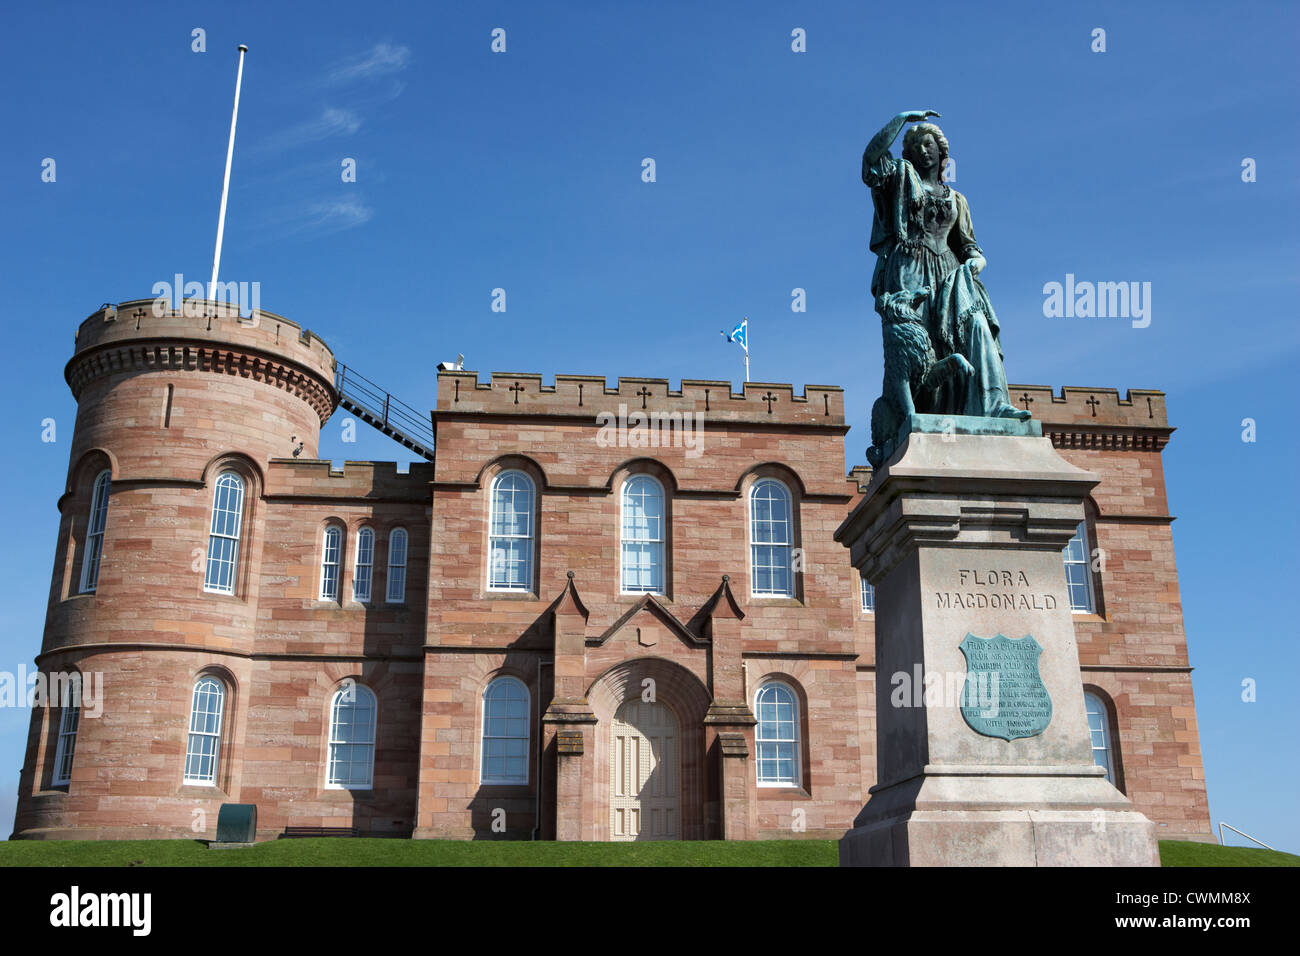 Le château d'Inverness et statue de Flora Macdonald highland ecosse uk Banque D'Images